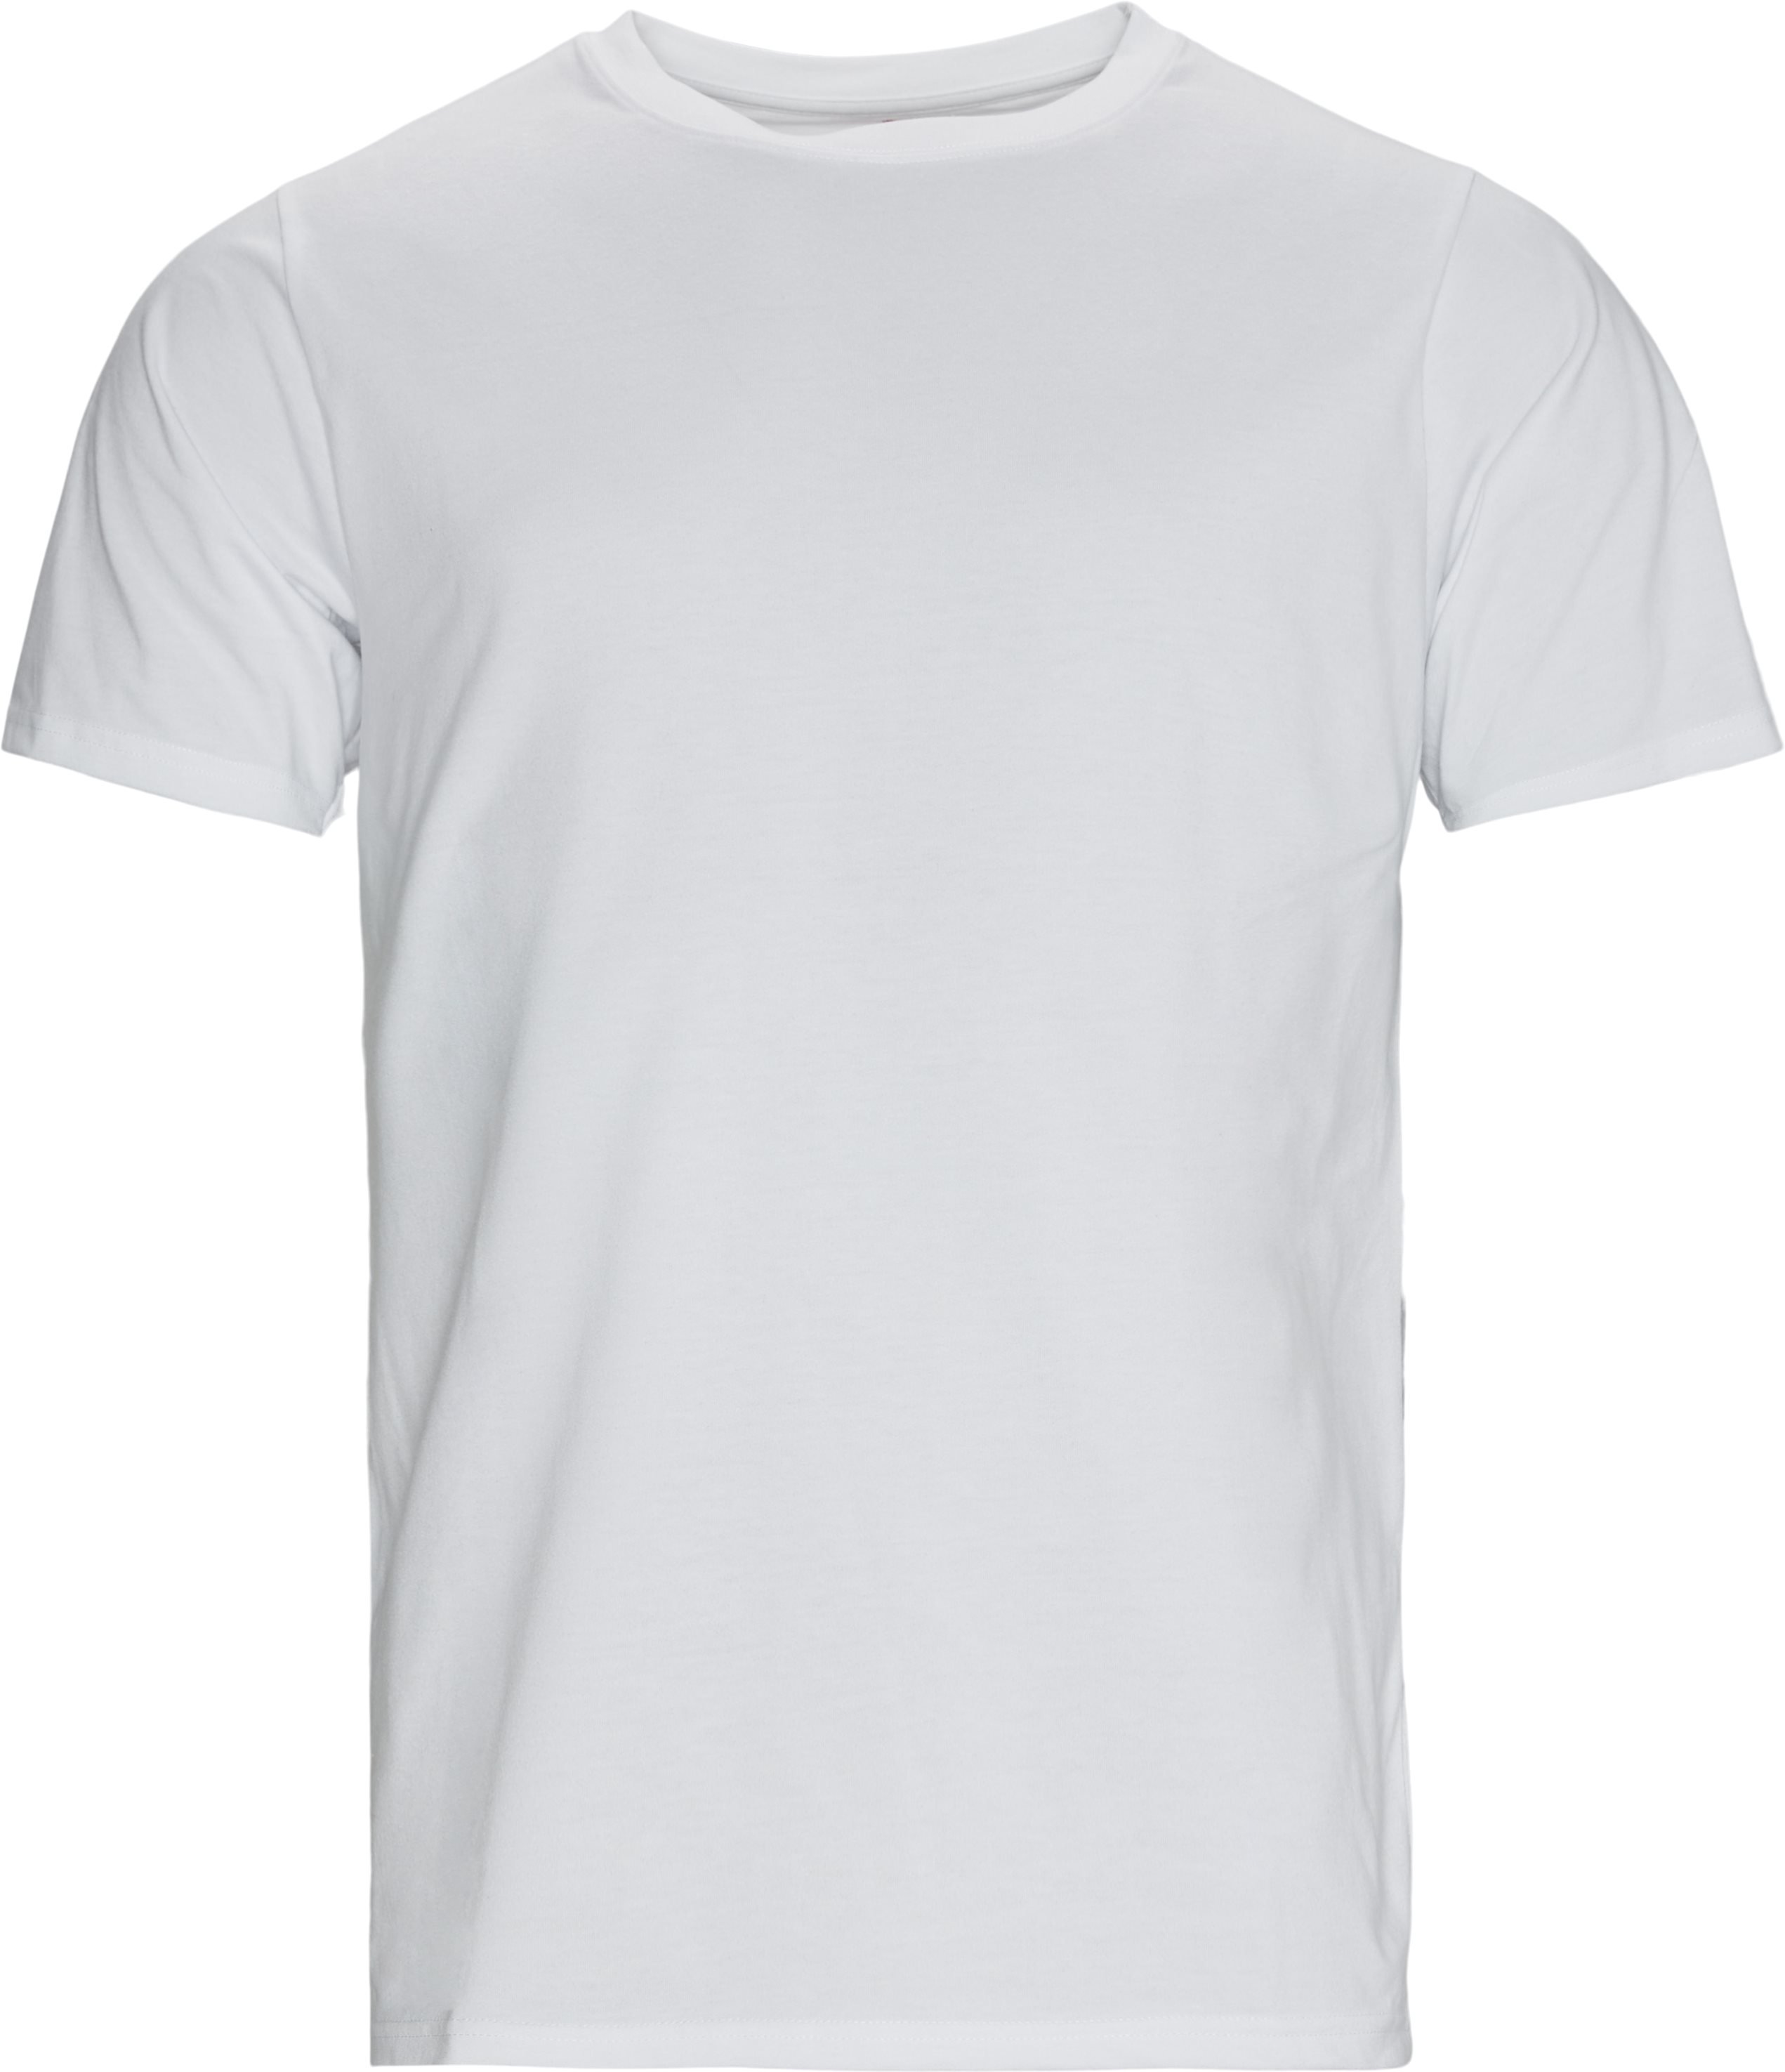 Pau Tee - T-shirts - White